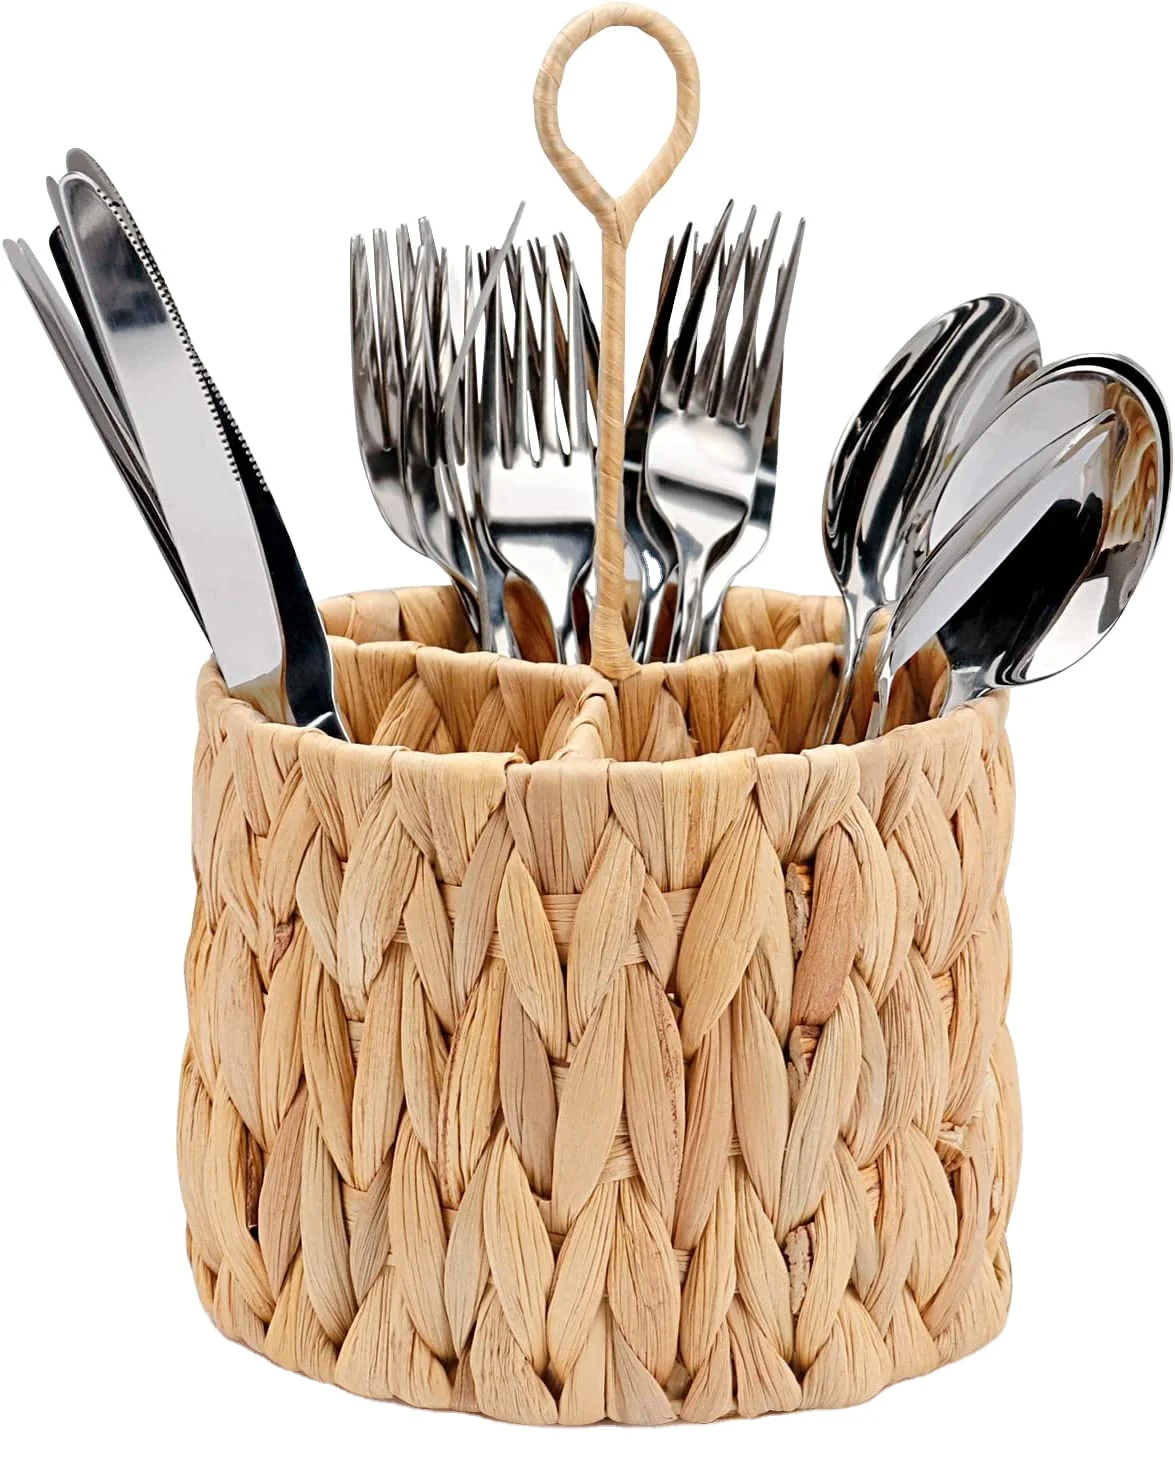 round water hyacinth caddy basket kitchen cutlery and utensil storage holder small makeup storage & organizer